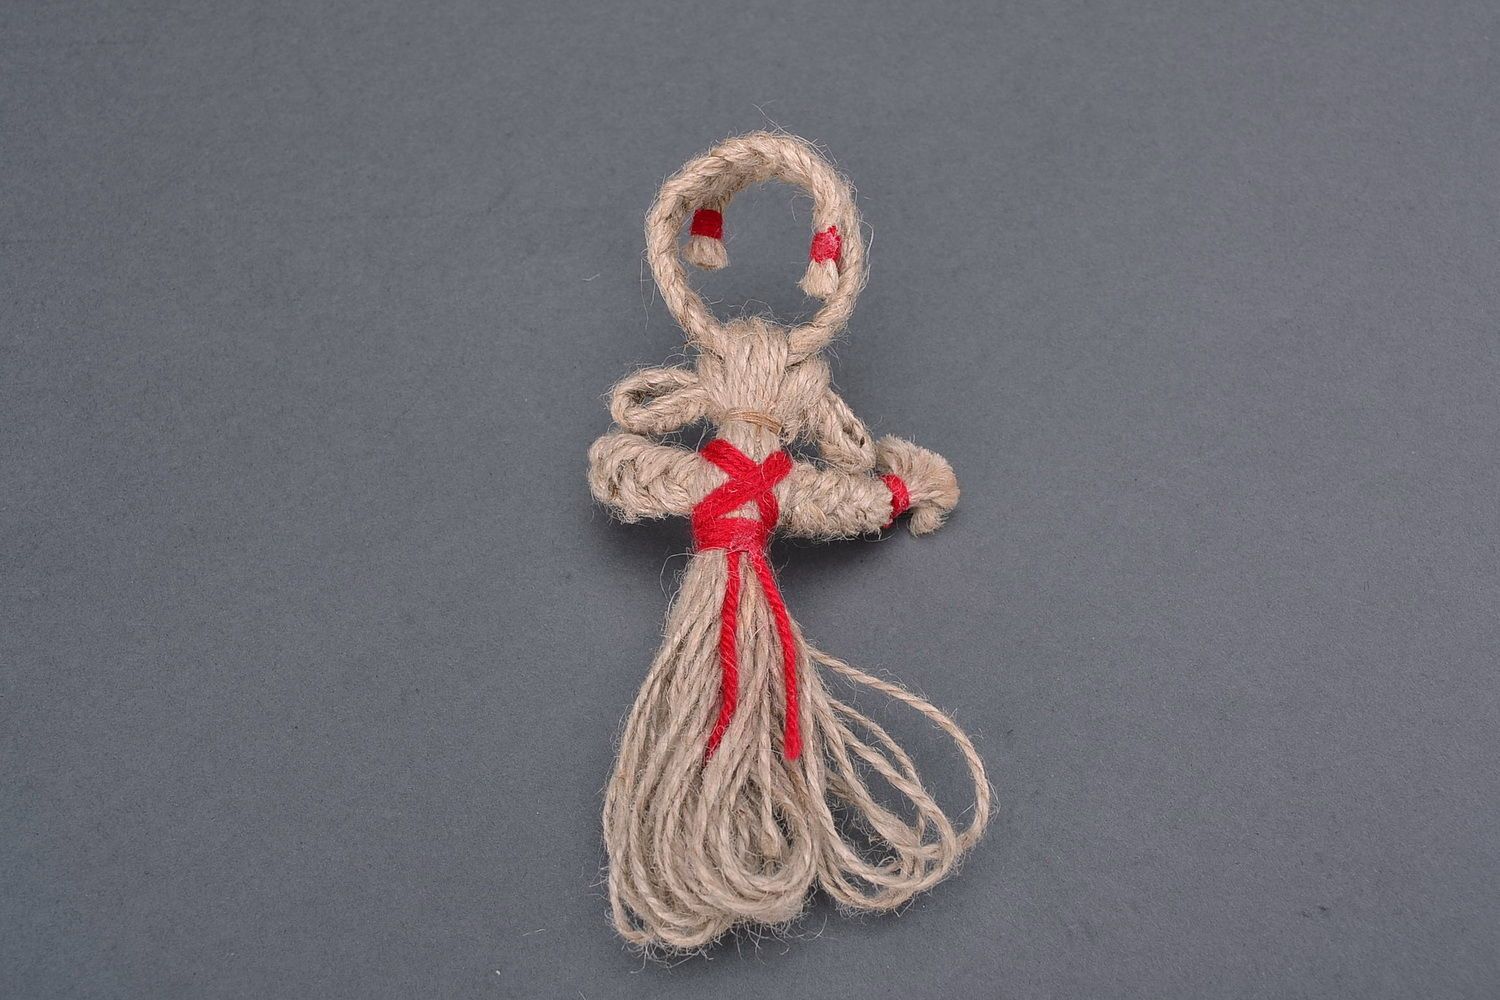 Bambola etnica di stoffa fatta a mano amuleto talismano giocattolo slavo foto 2